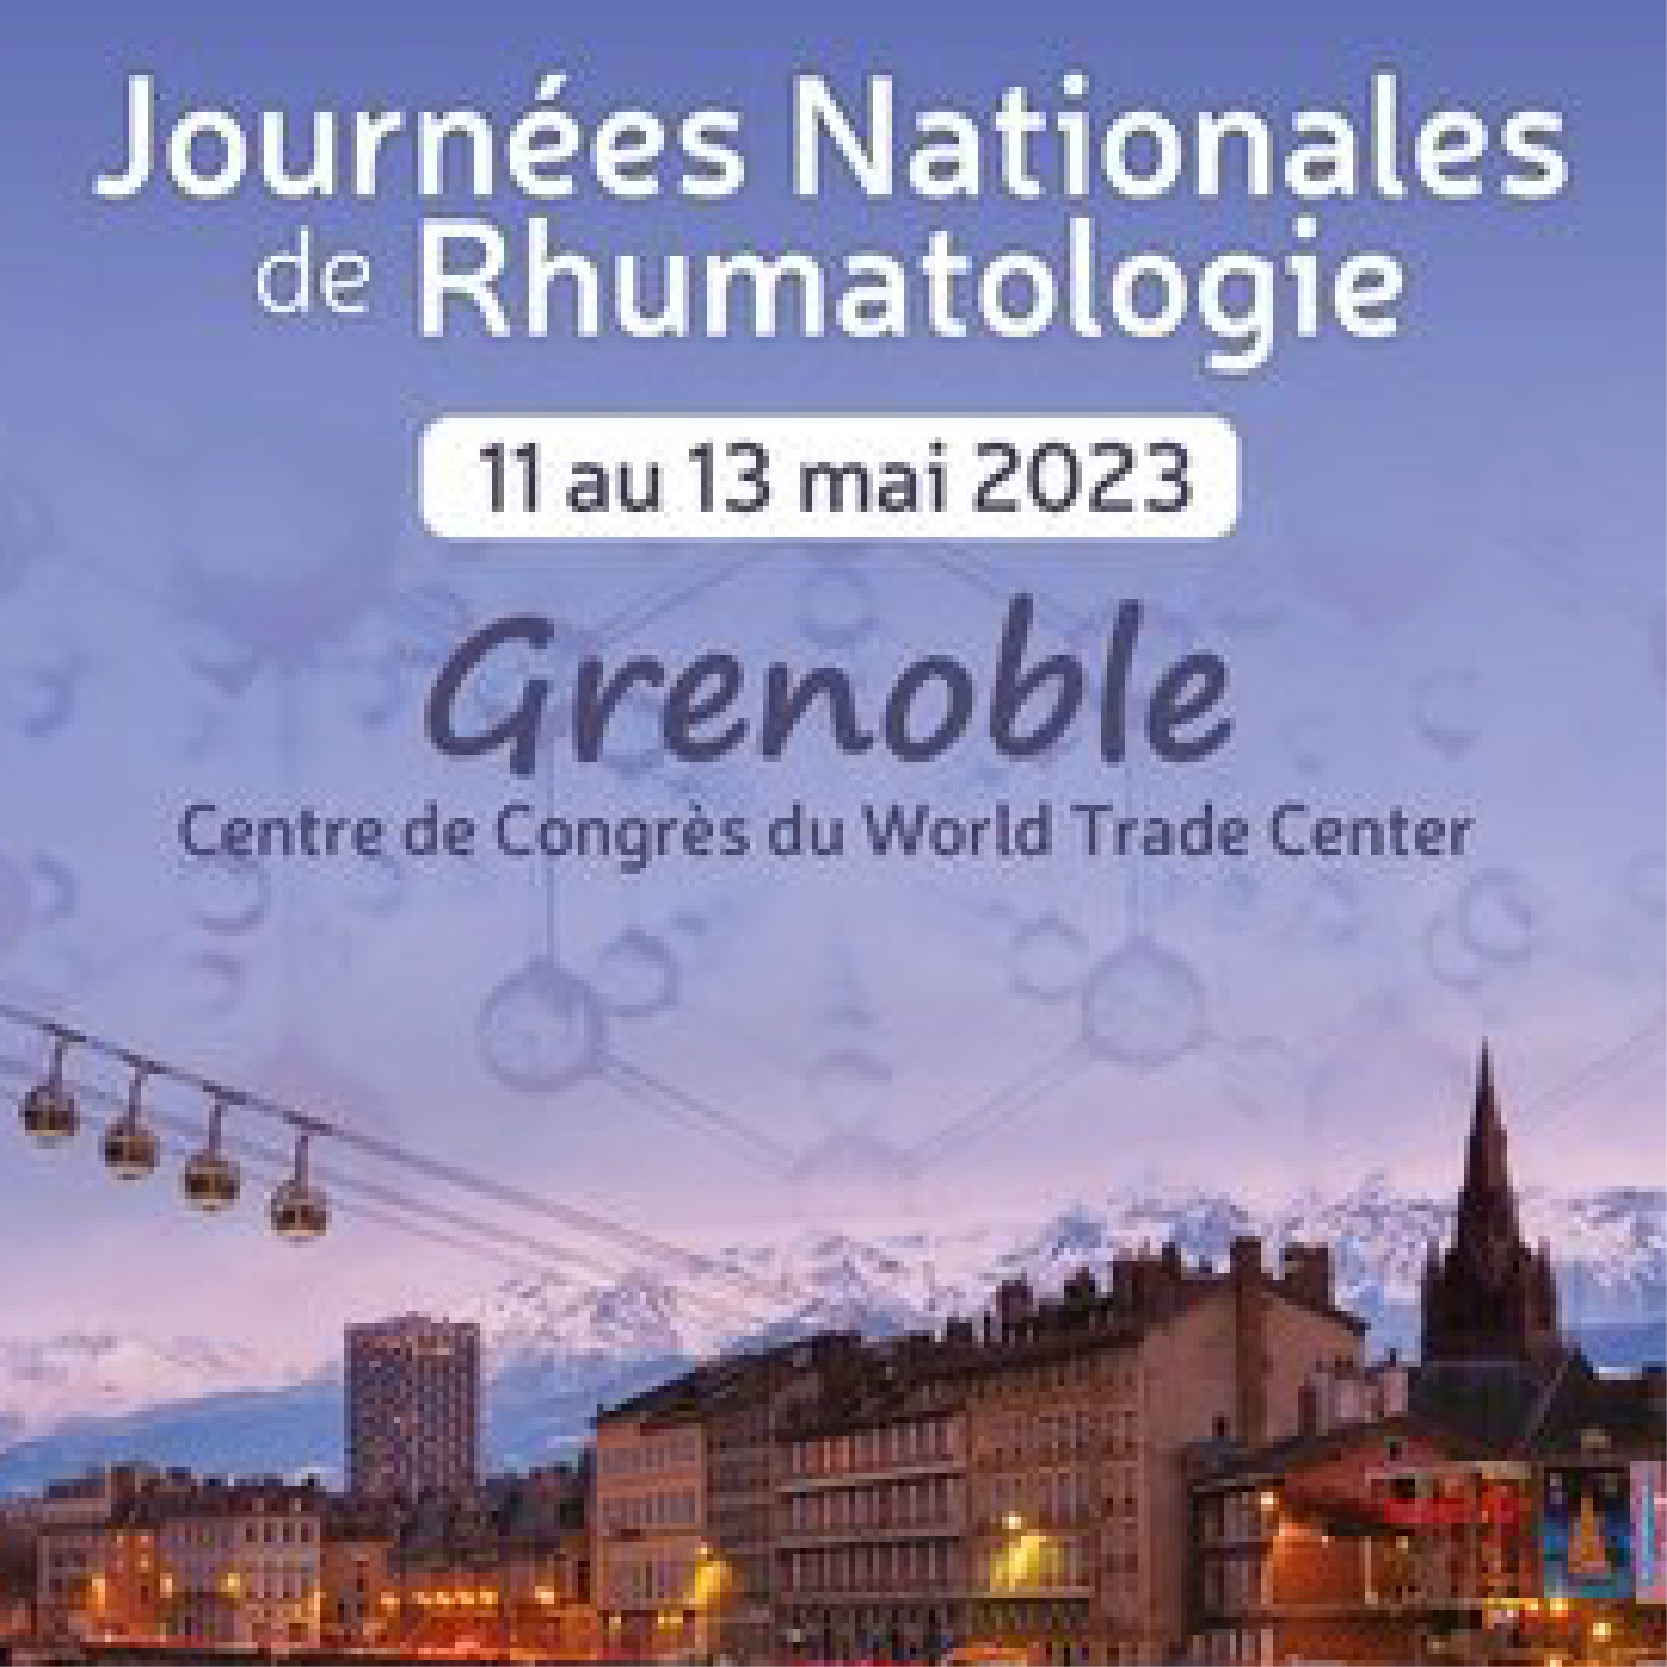 Journées Nationales de Rhumatologie - JNR 2023